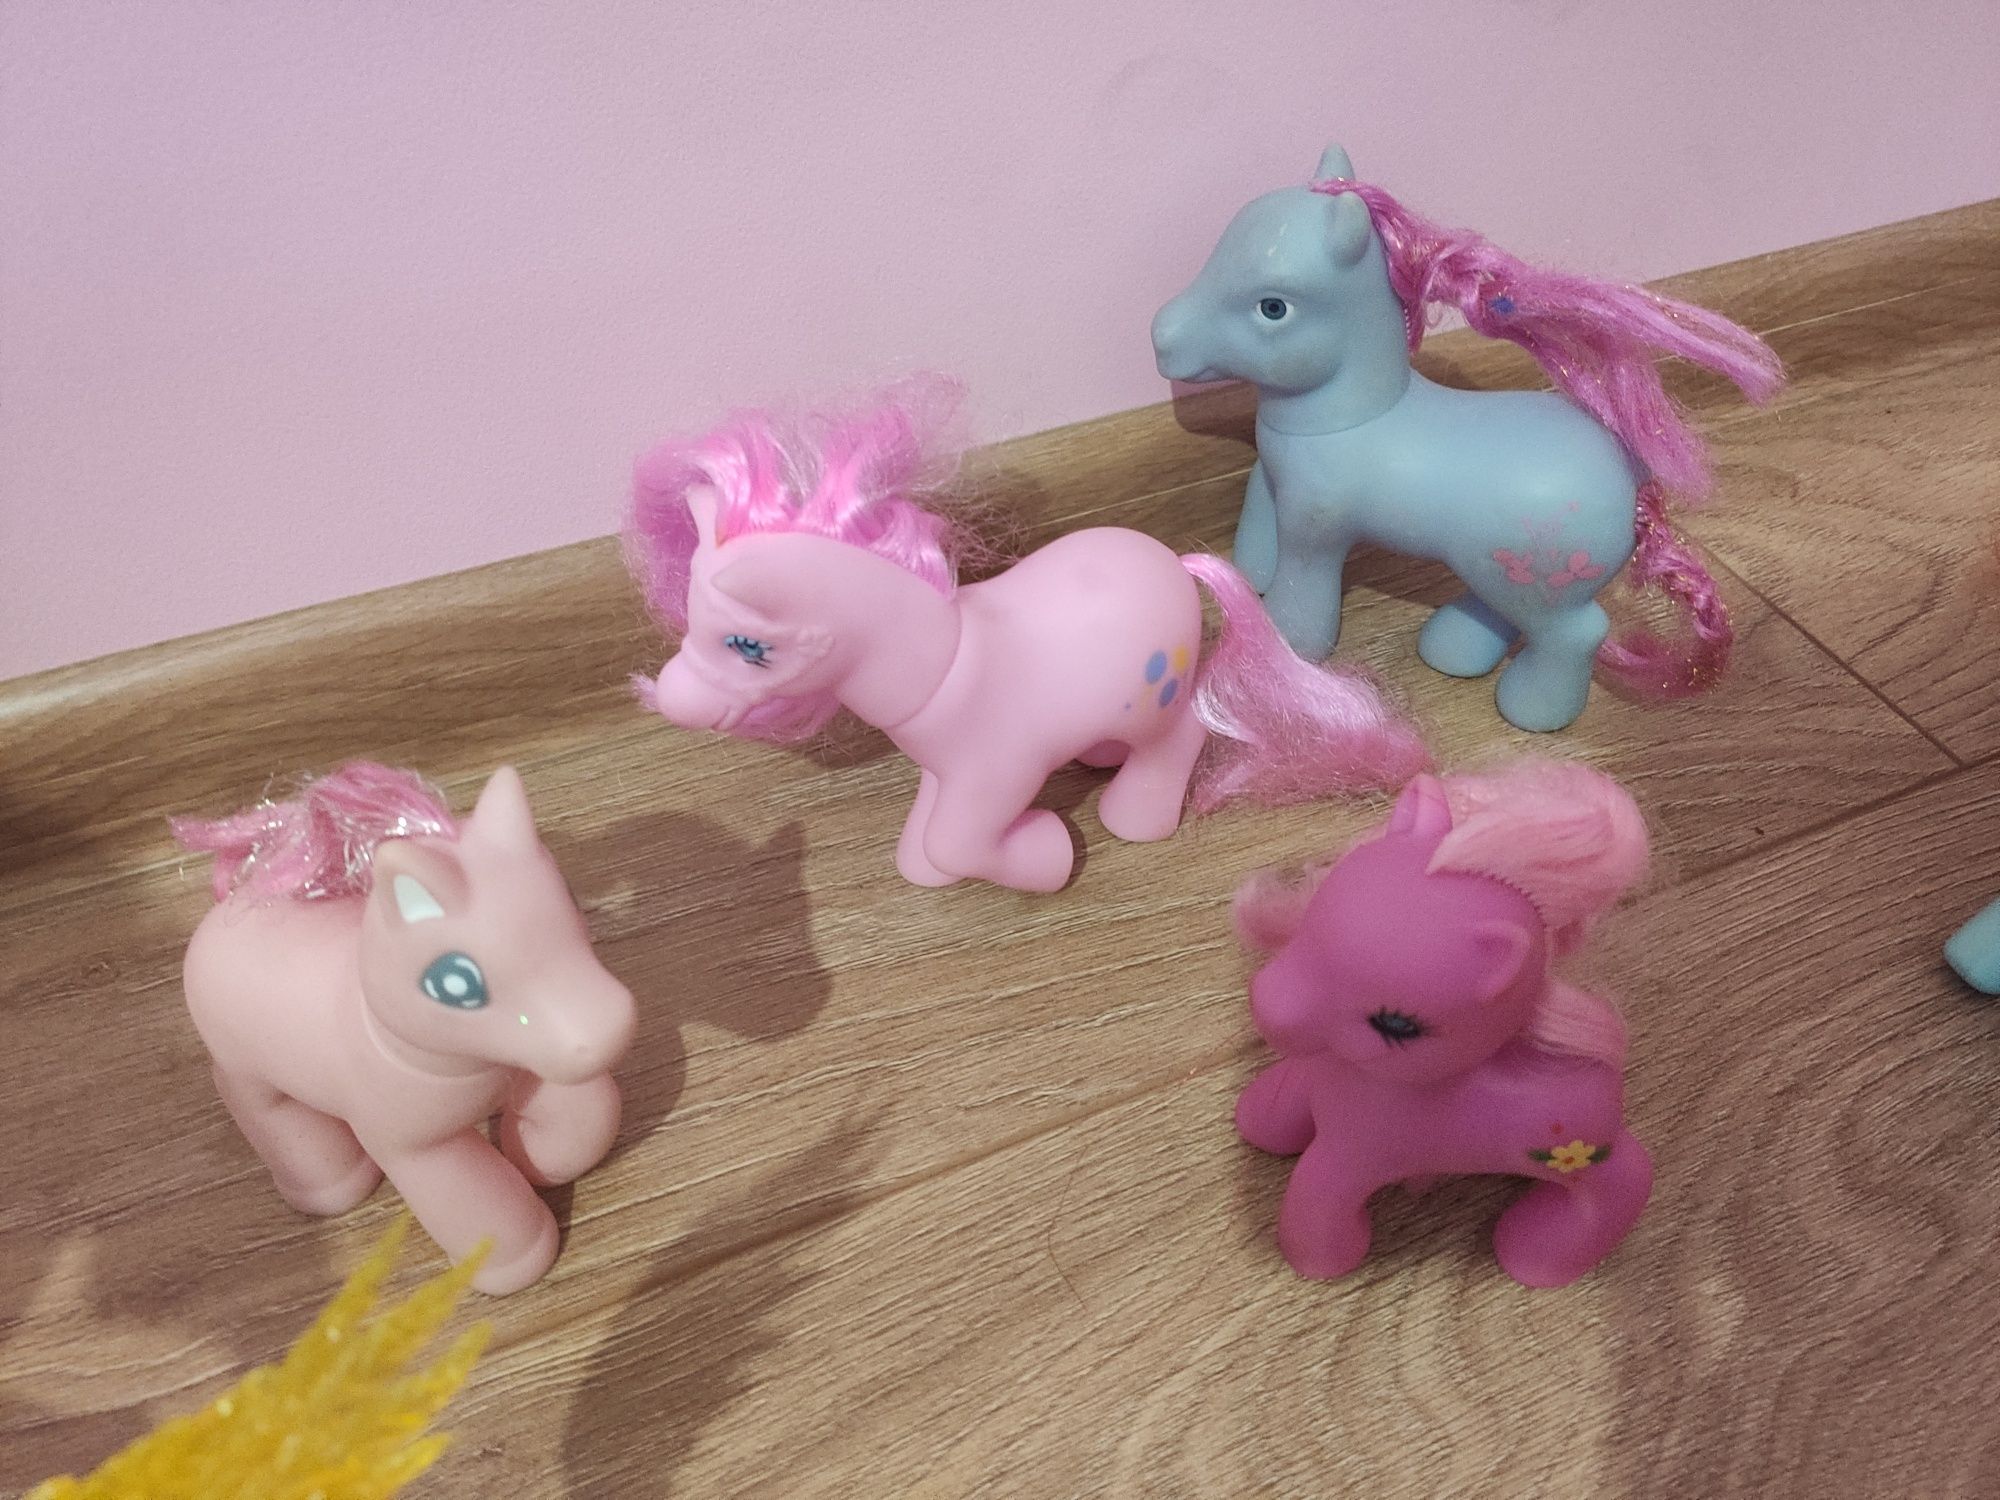 12 szt Figurki konie, jednorożec Celestia, my little pony,